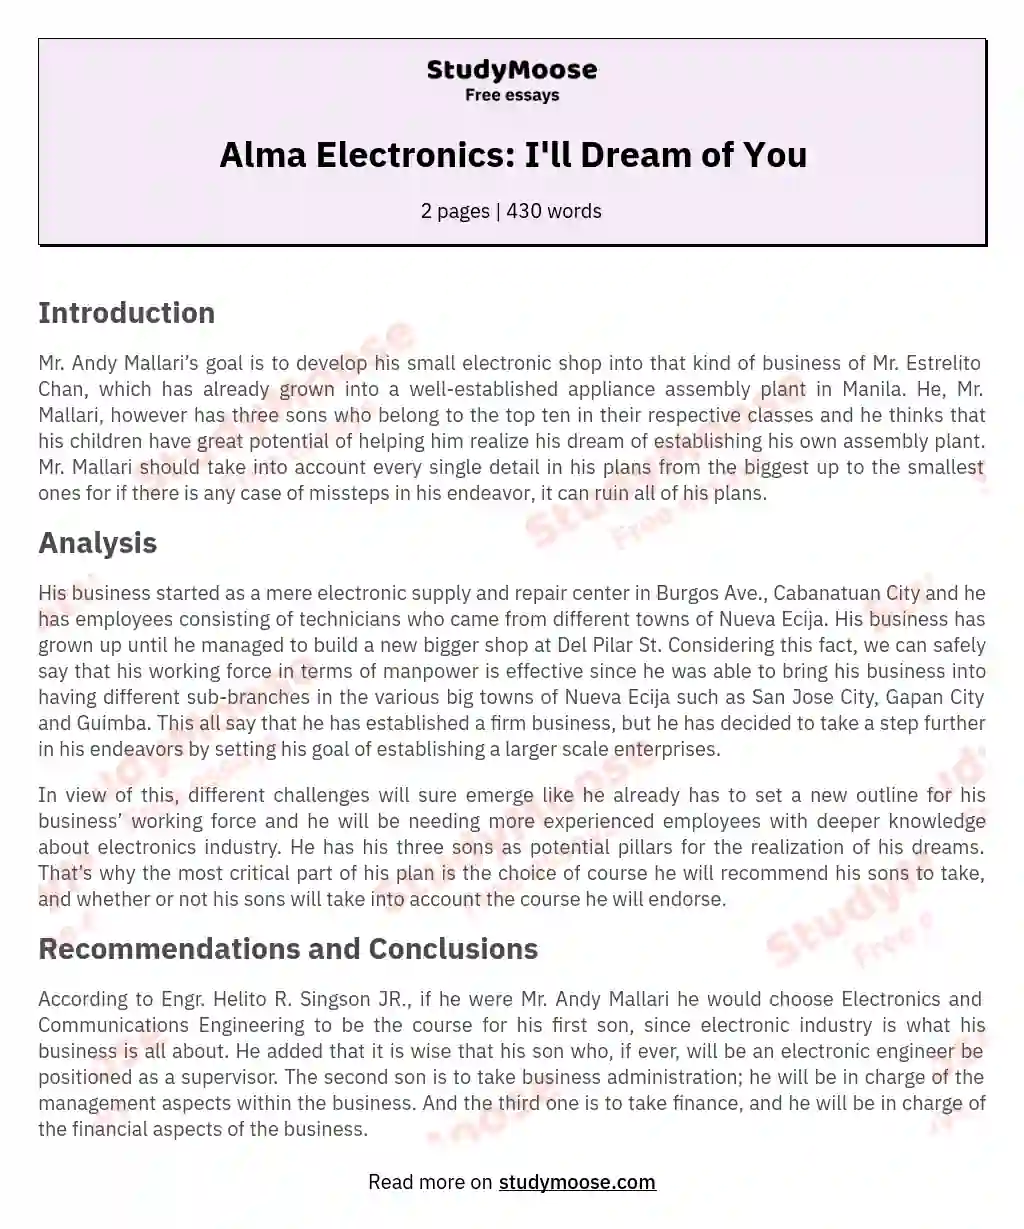 Alma Electronics: I'll Dream of You